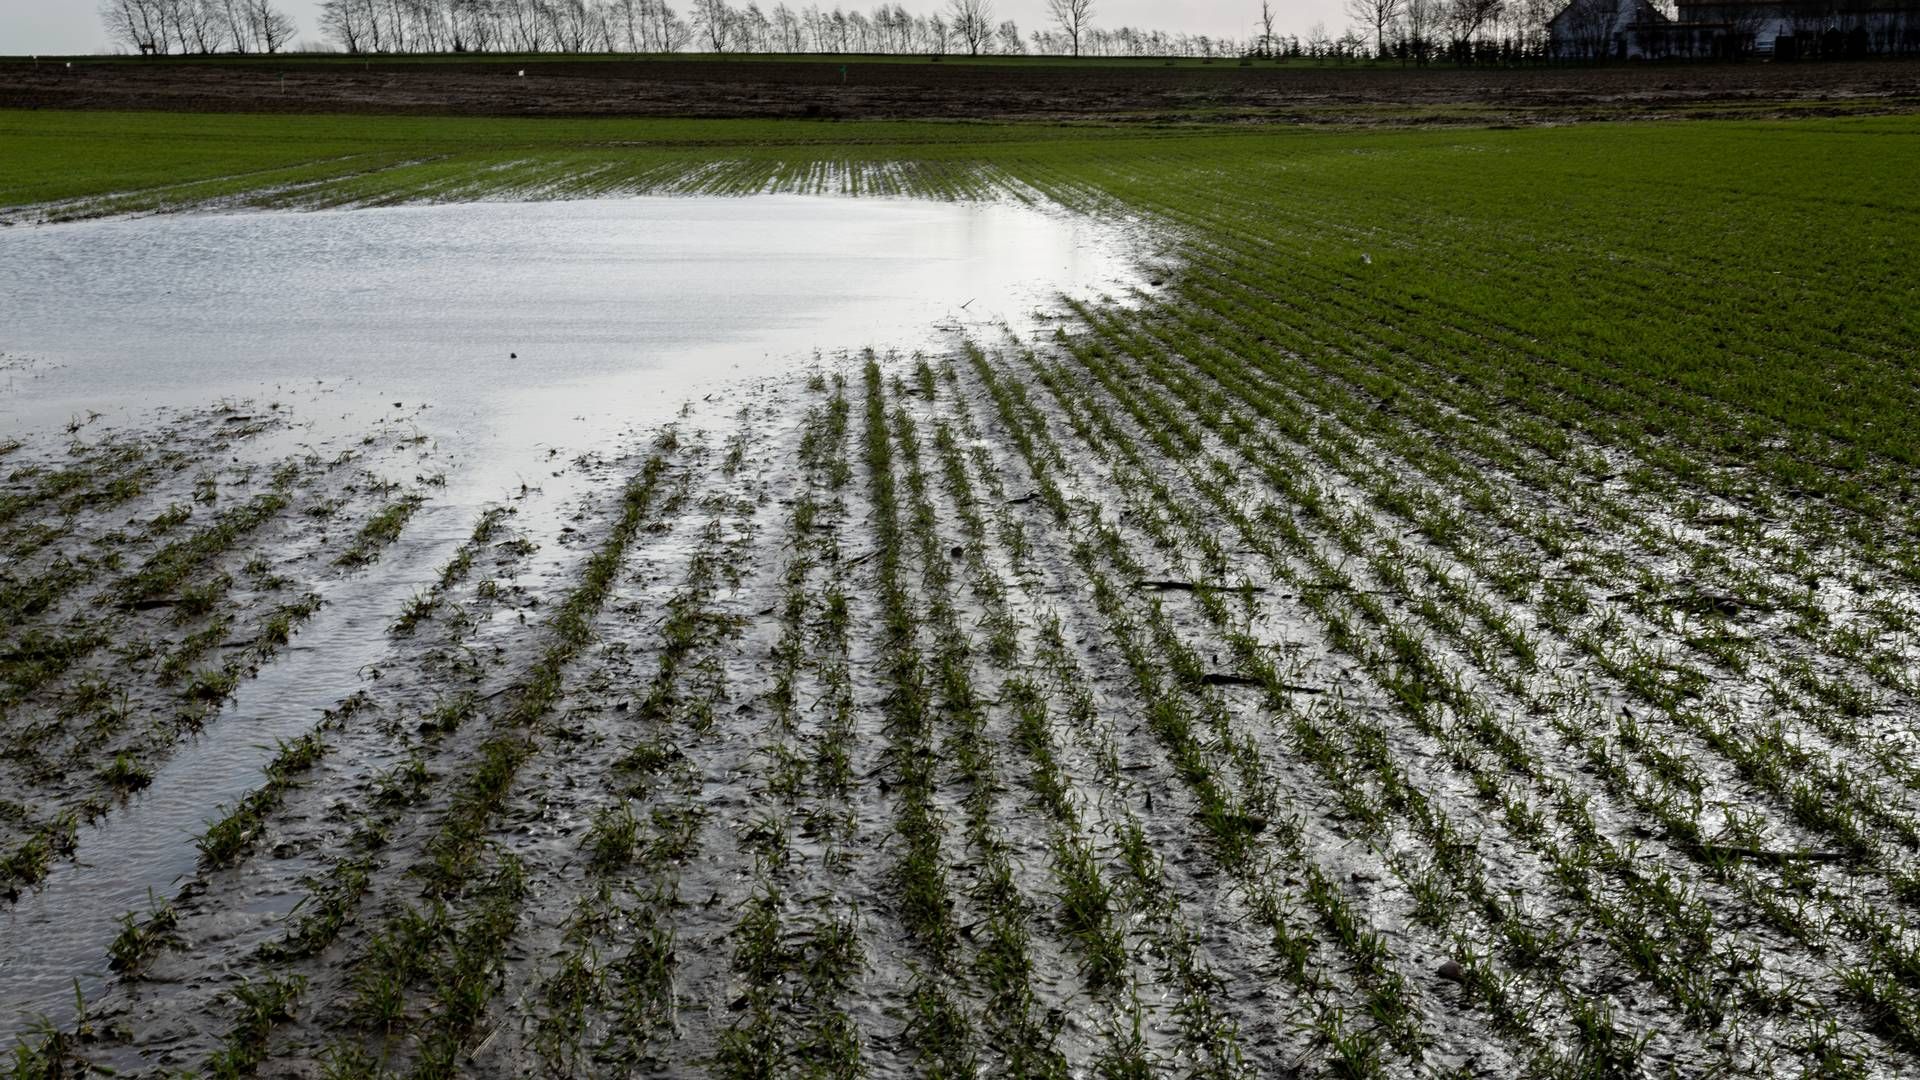 Landbrugsjorden har de seneste år været i høj kurs hos energiselskaberne. | Foto: Mads Nissen